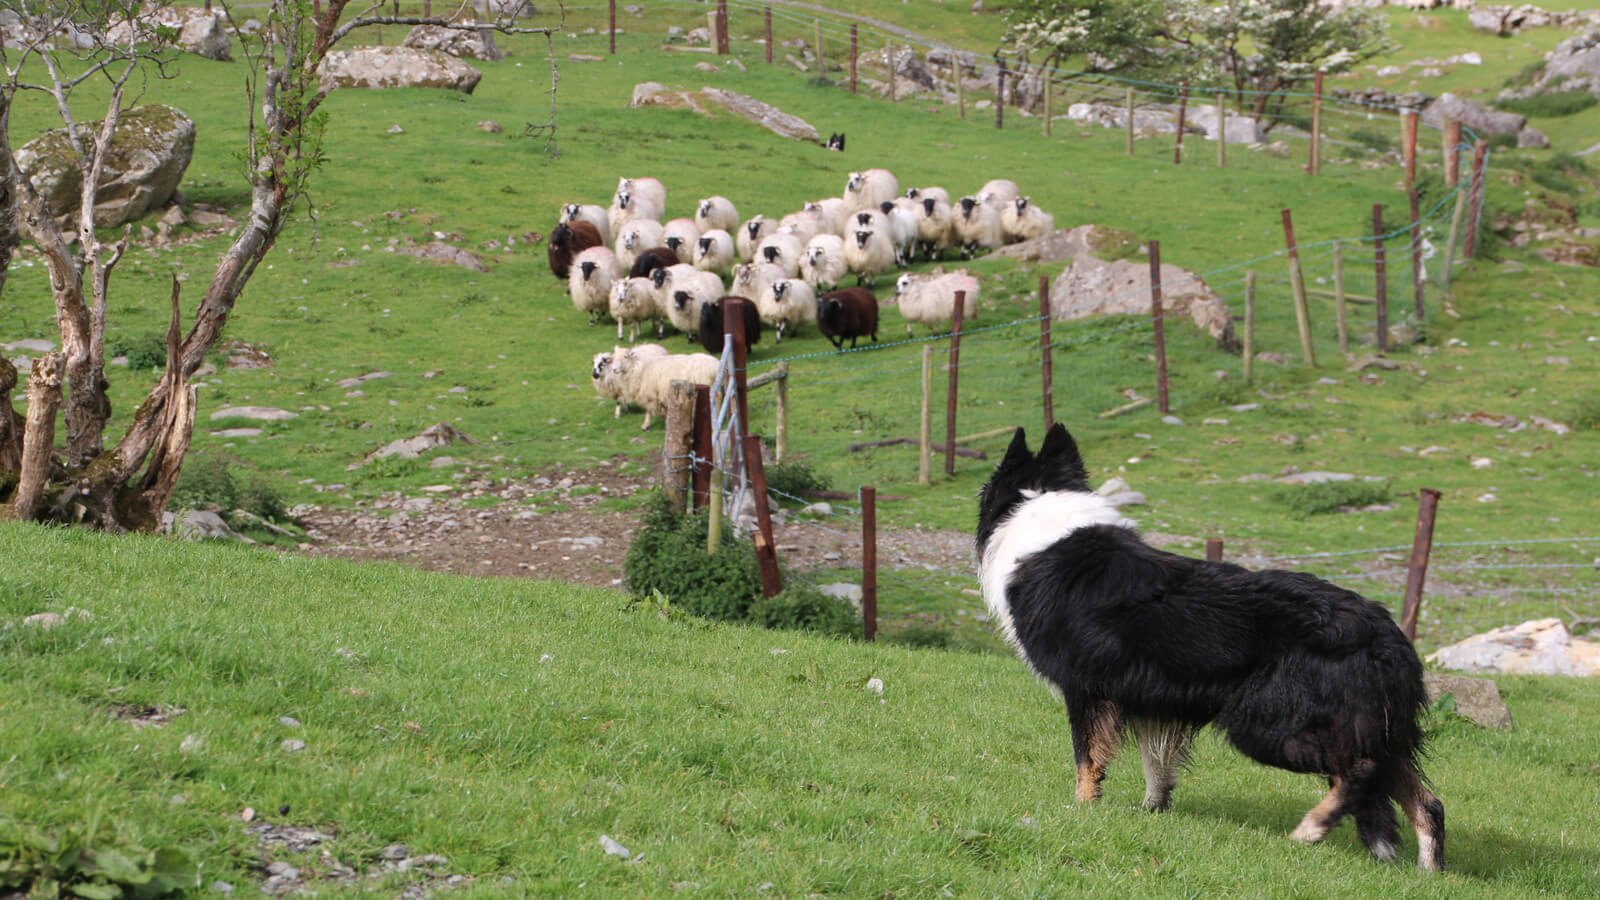 Sheepdog herding sheep on a farm in Ireland